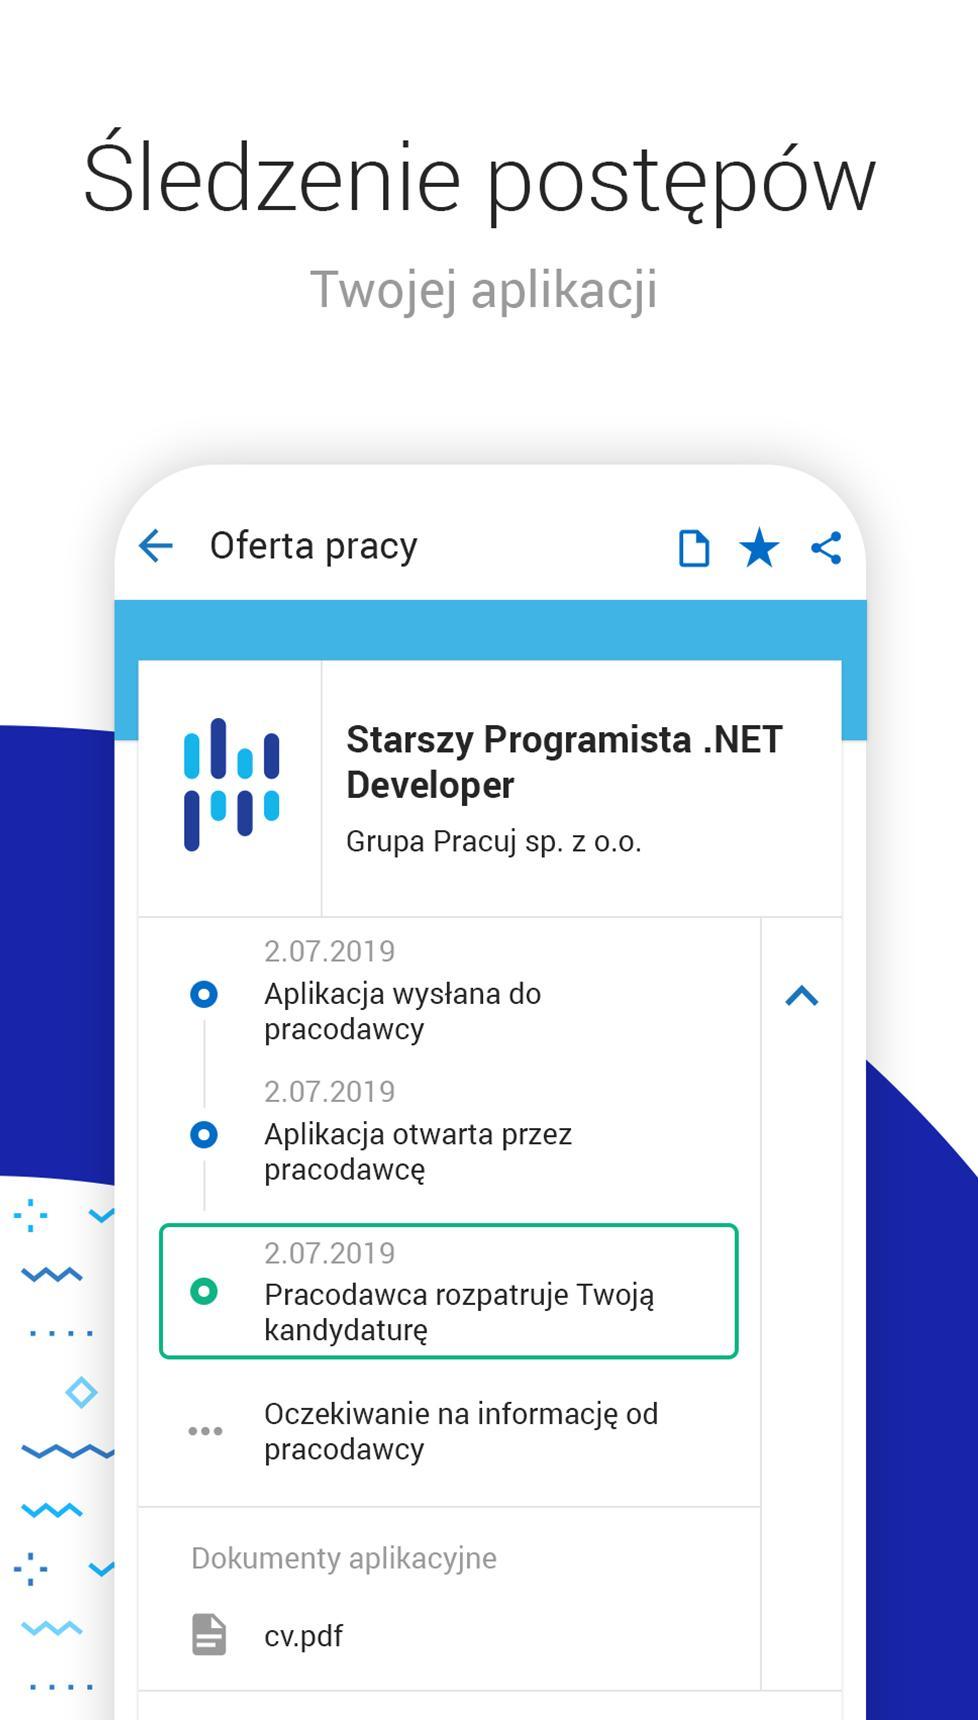 Pracuj.pl - Oferty pracy. Sprawdź, czy nie szukasz for Android - APK  Download